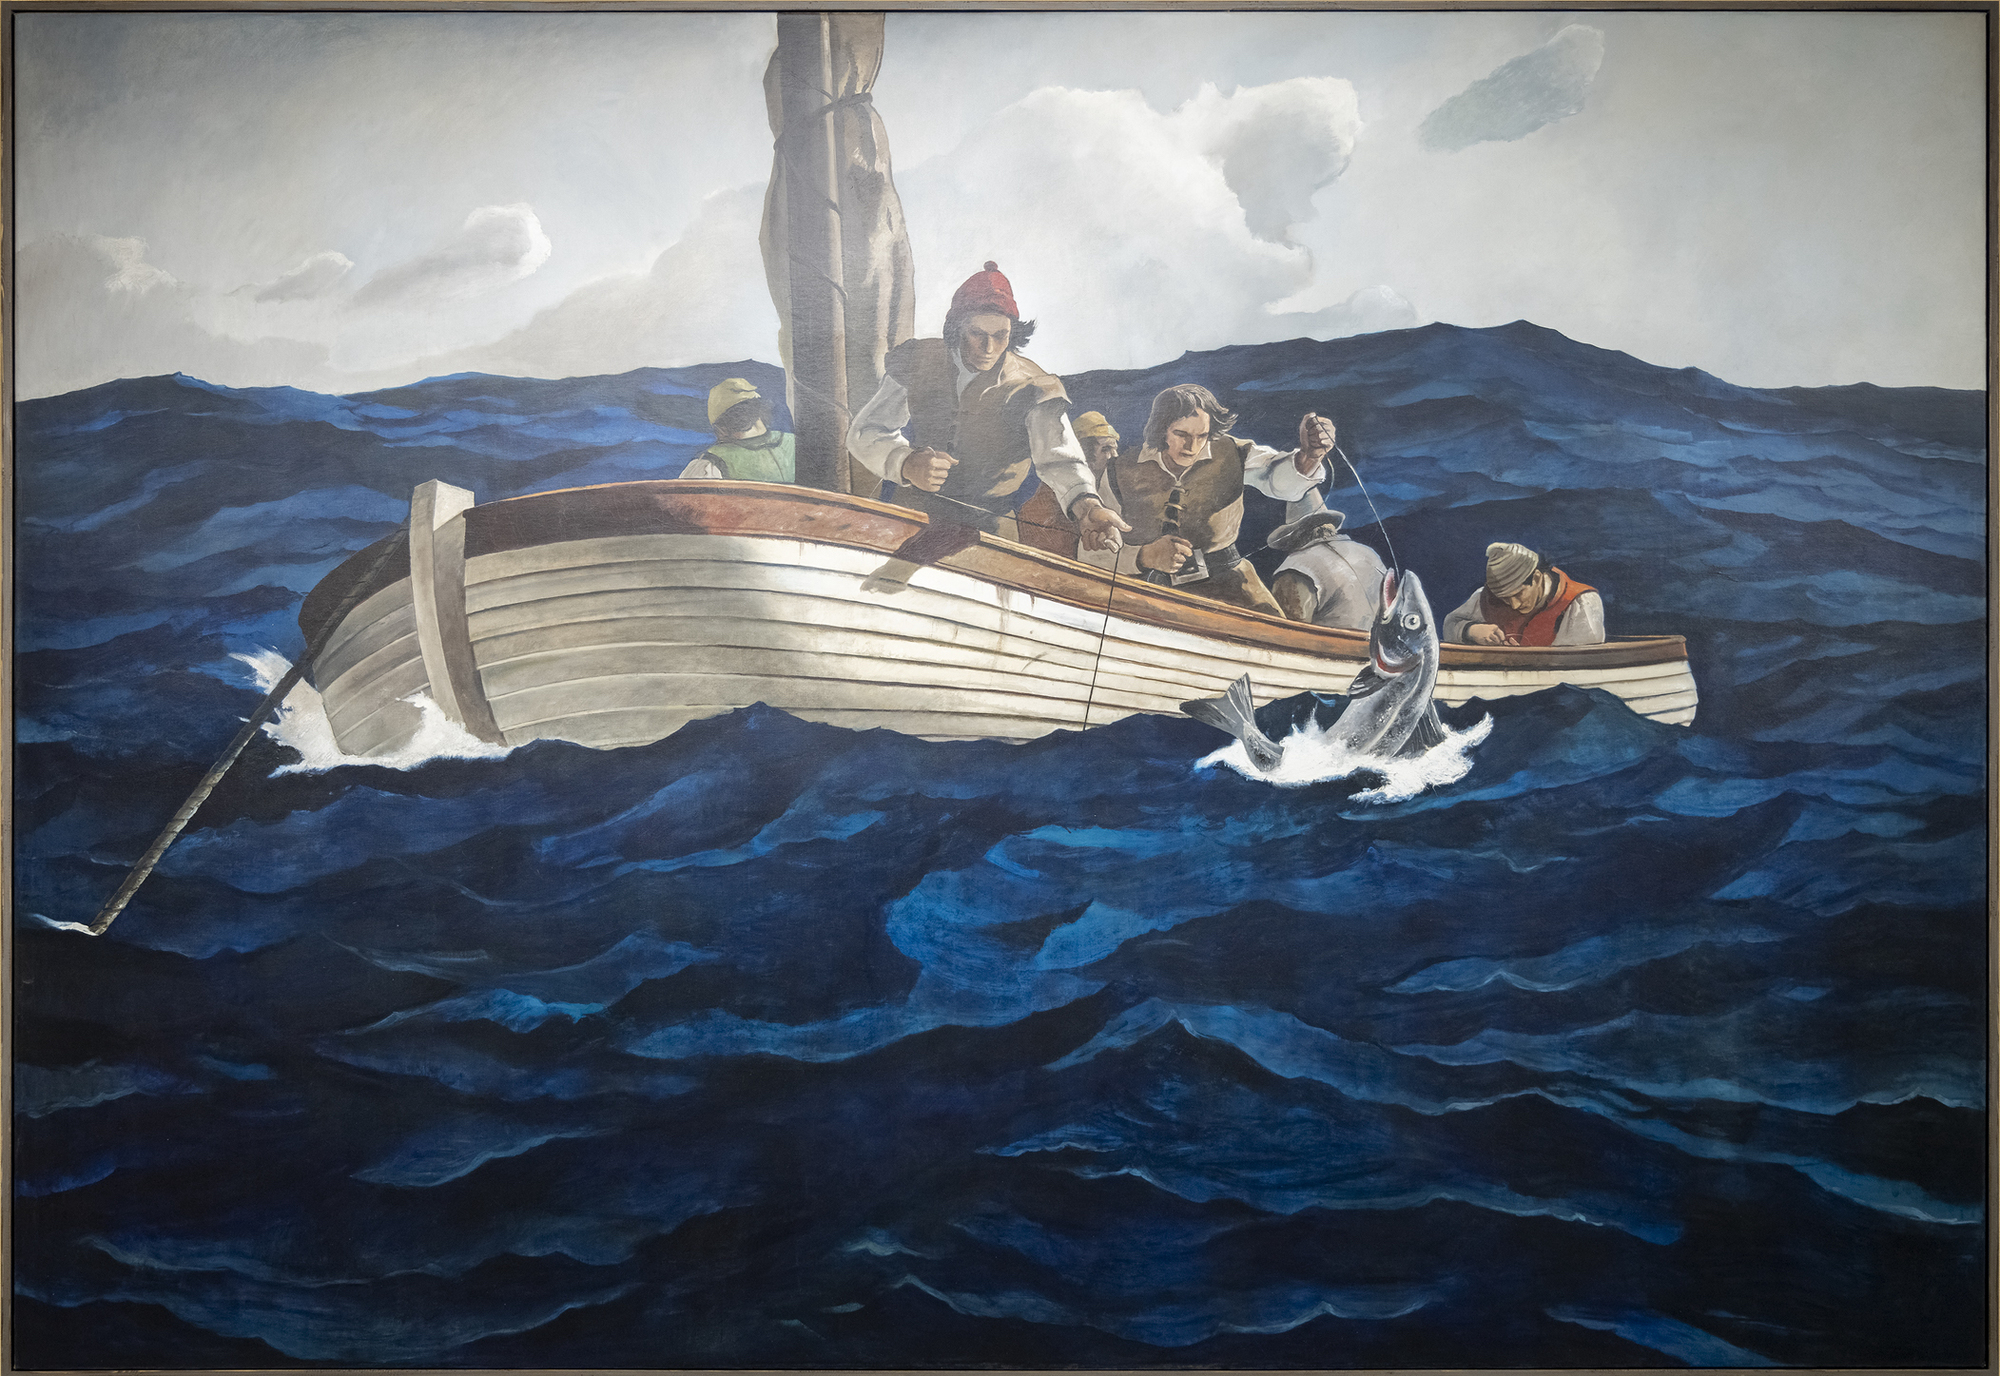 Andrew Wyeth & N. C. Wyeth - Puritan Cod Fishers - oil on canvas - 108 1/2 x 157 1/2 in.